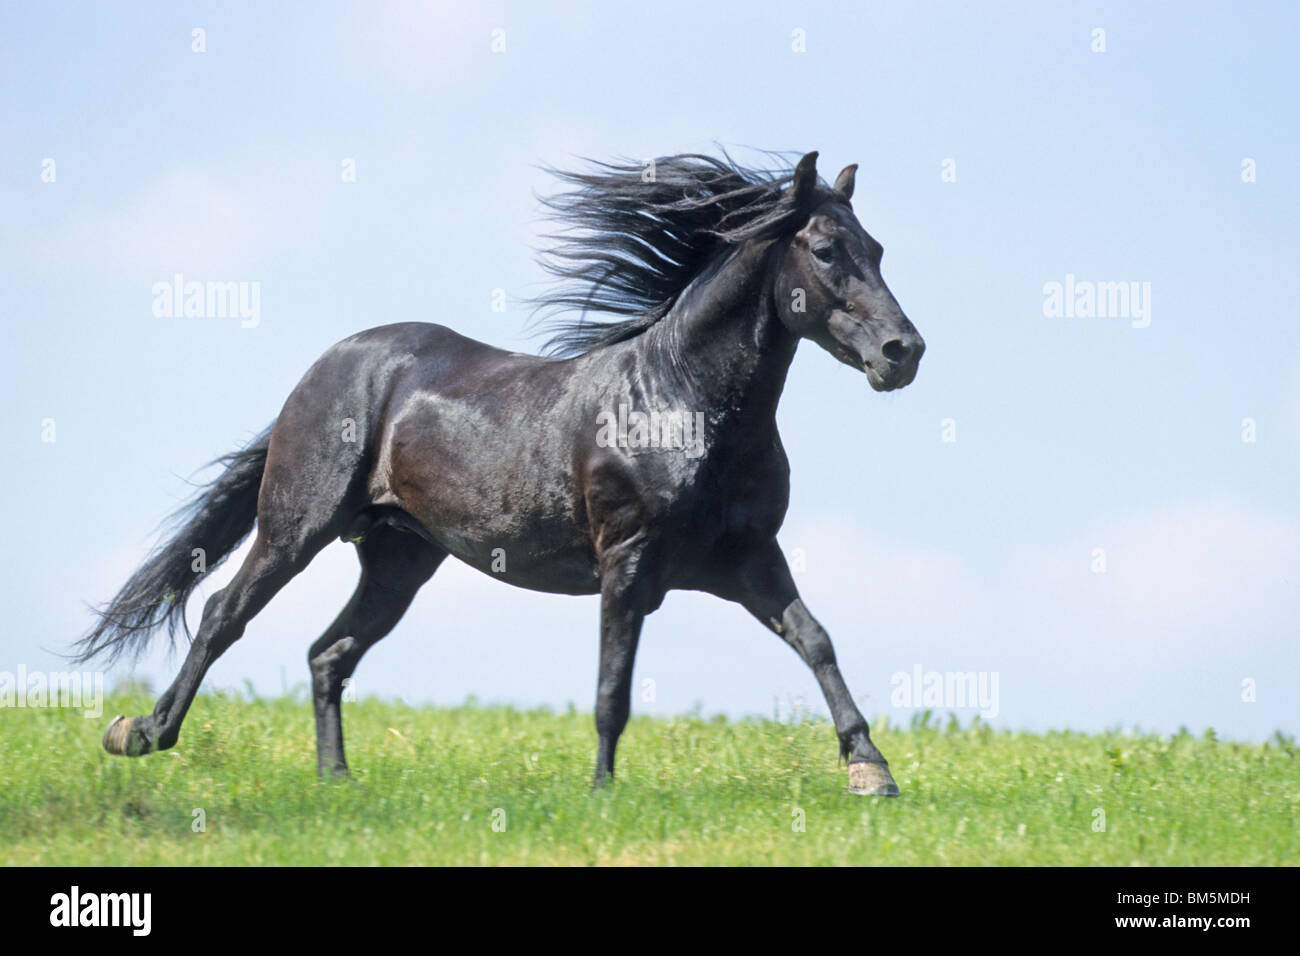 Paso Fino (Equus ferus caballus). Black stallion in gallop over grass. Stock Photo